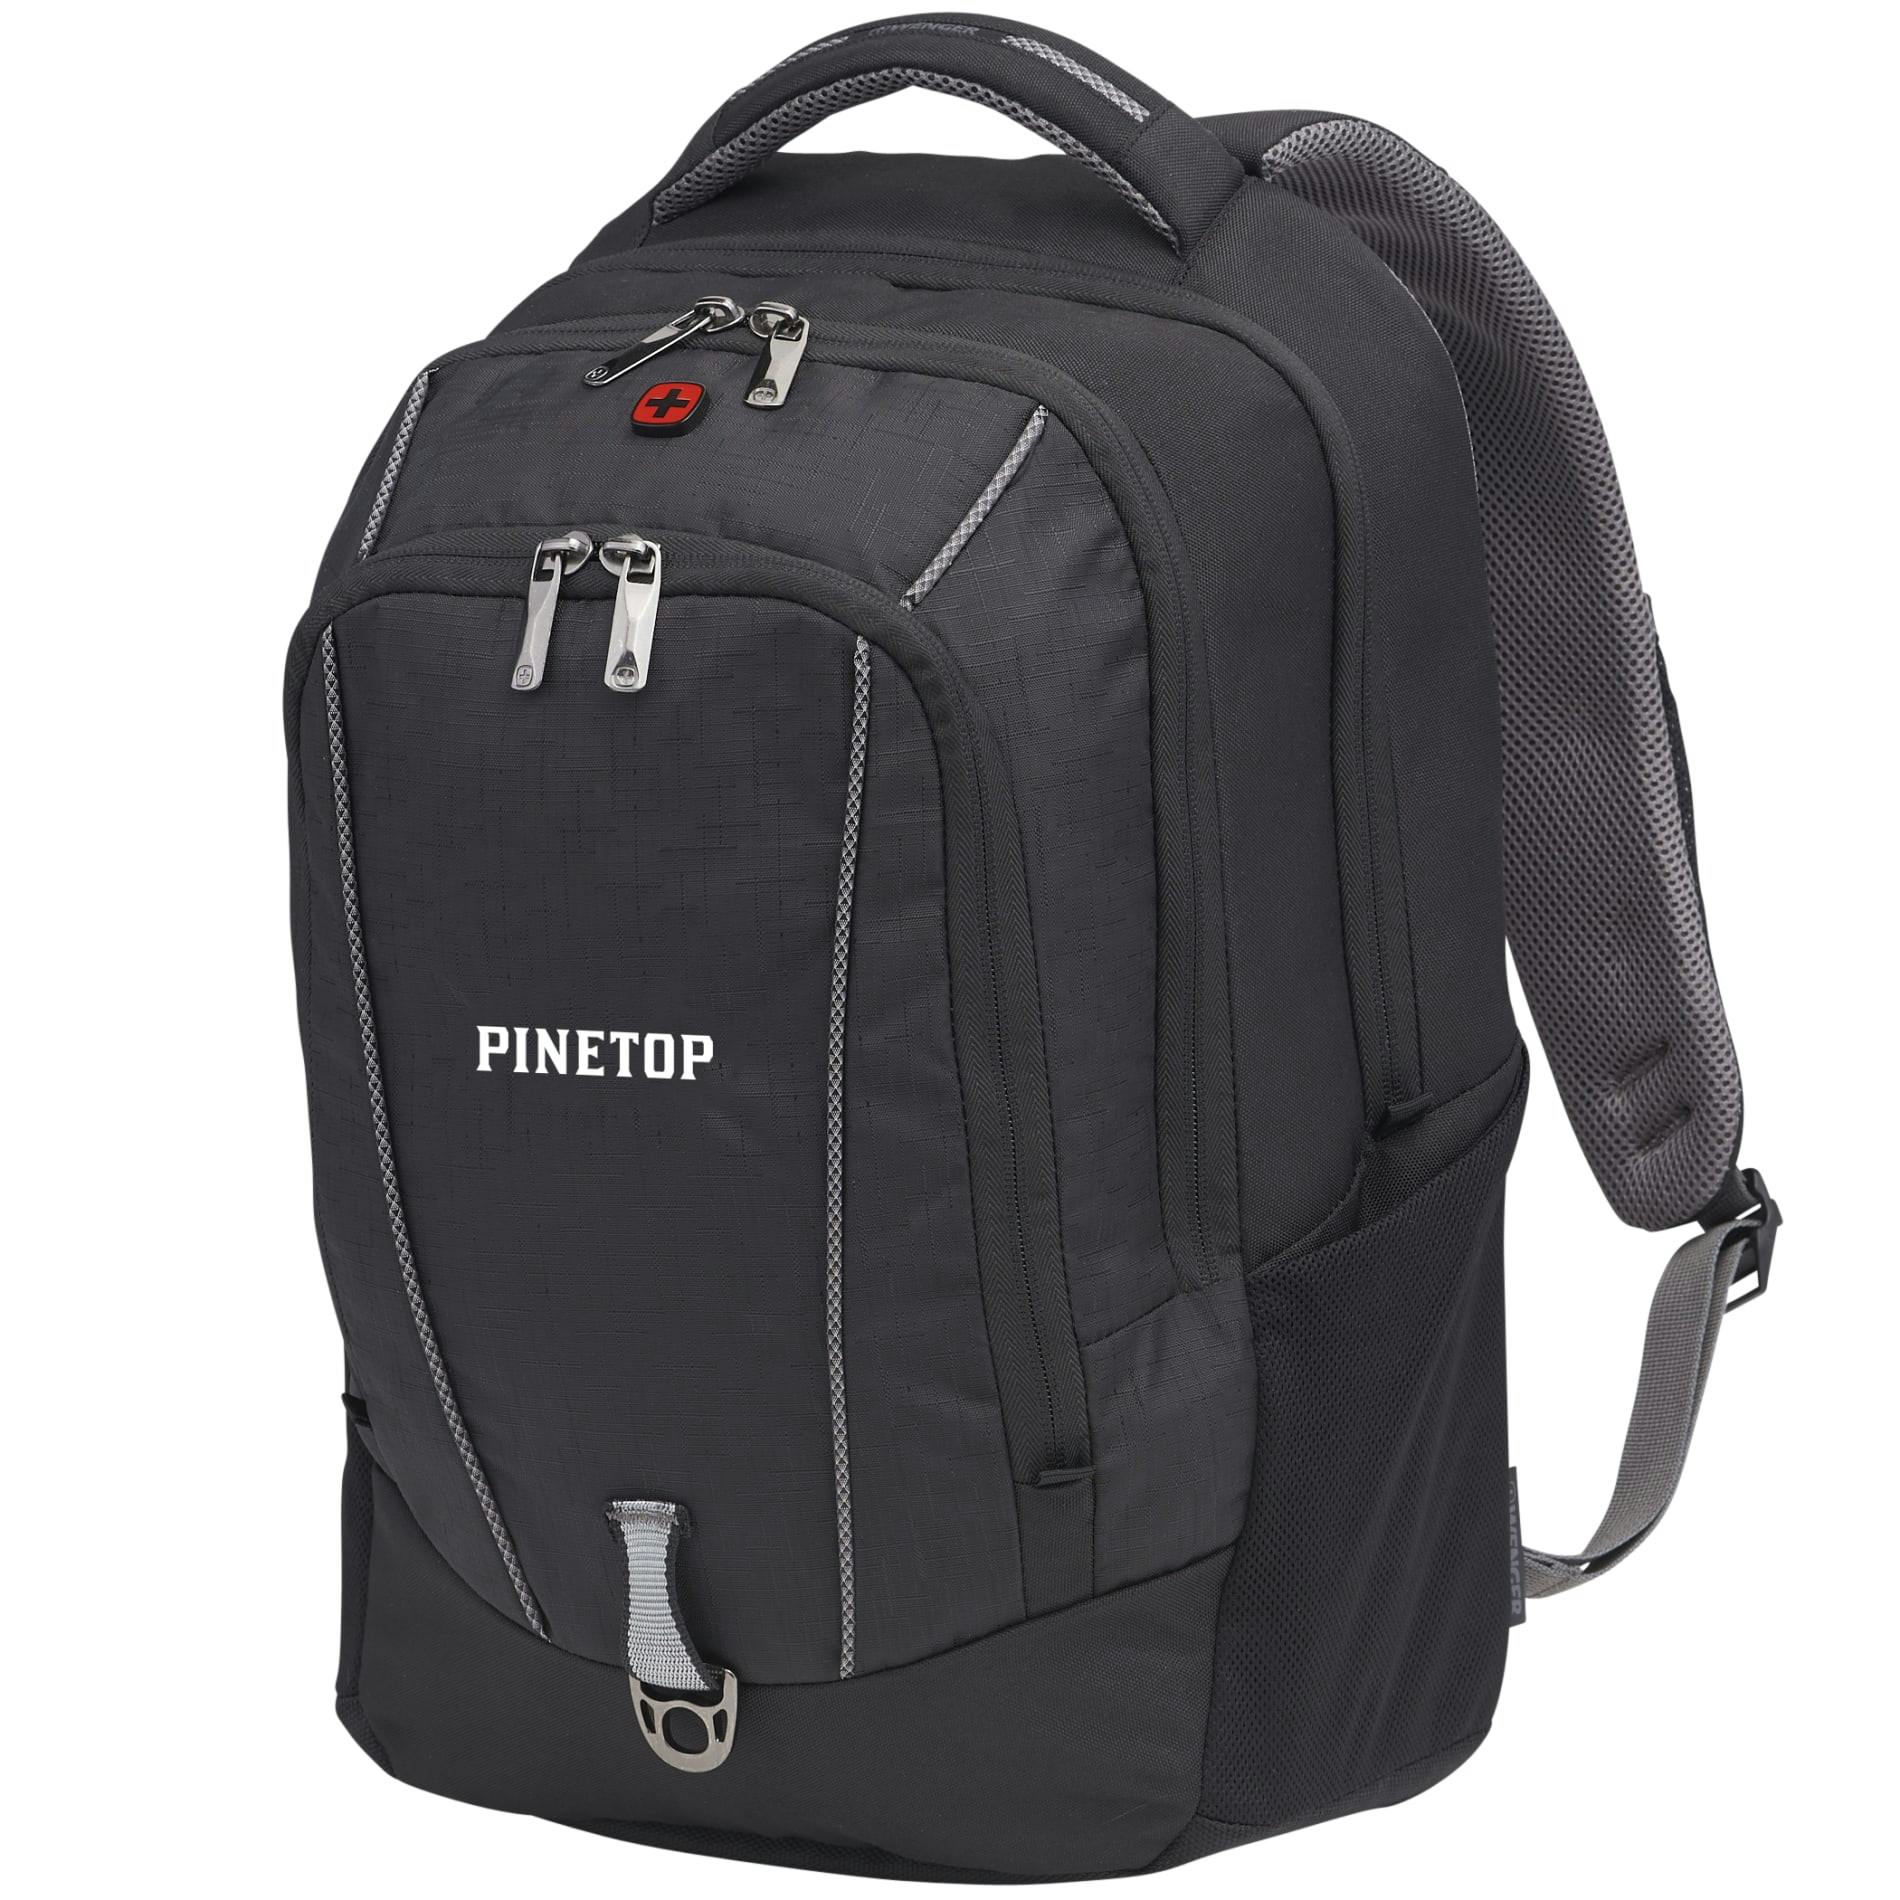 Wenger Pro II 17" Computer Backpack - additional Image 7